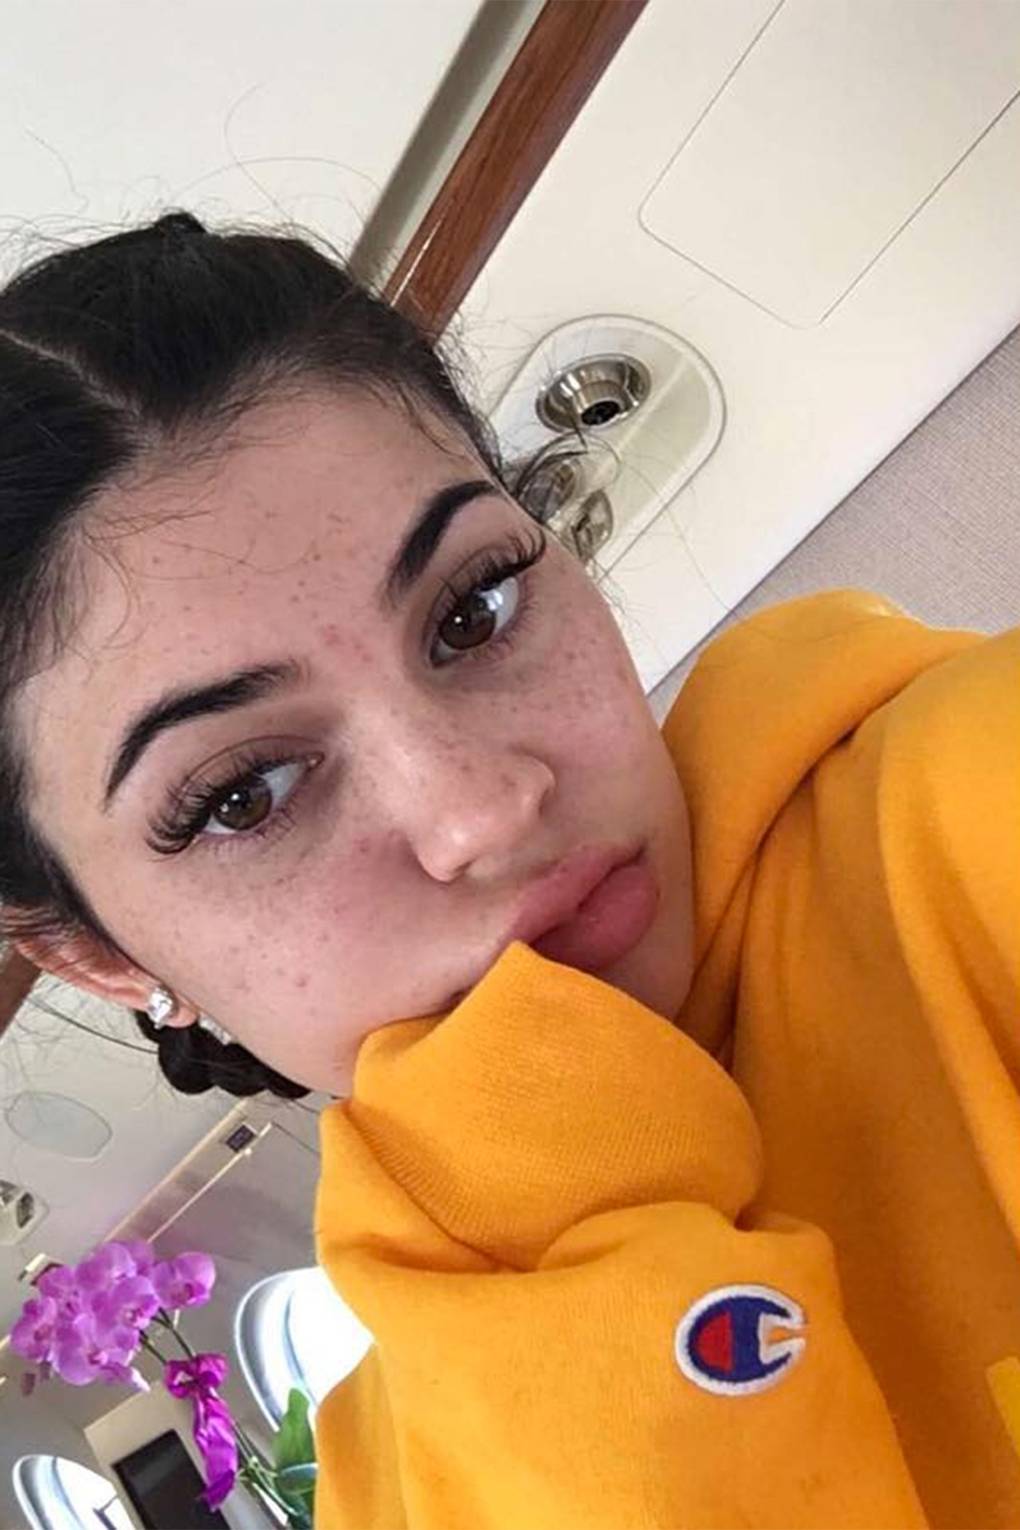 Kylie Jenner Freckles Photo No Makeup Makeup Instagram Glamour Uk